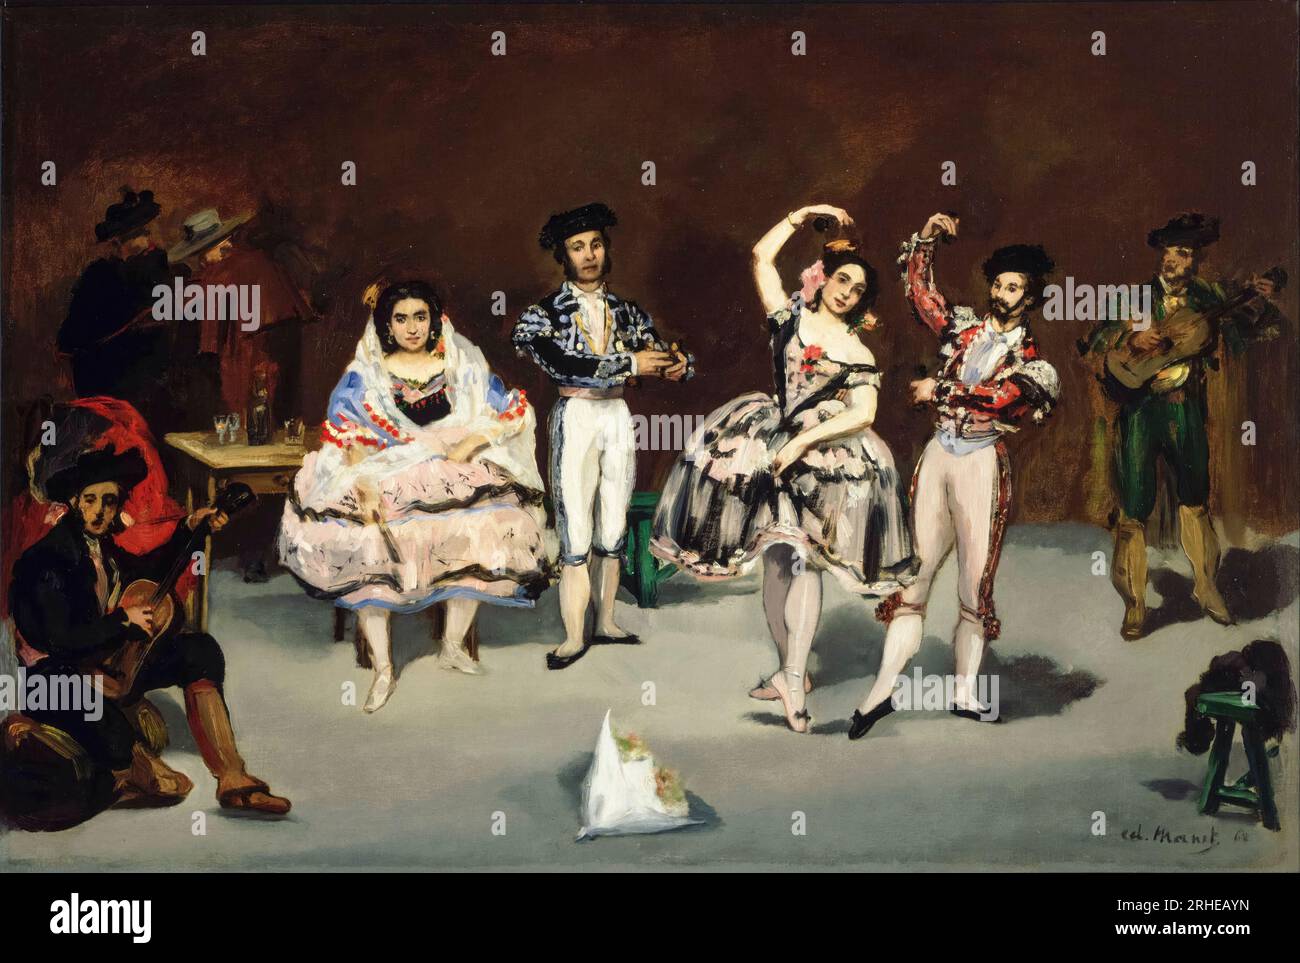 Edouard Manet, Ballet espagnol, peinture à l'huile sur toile, 1862 Banque D'Images